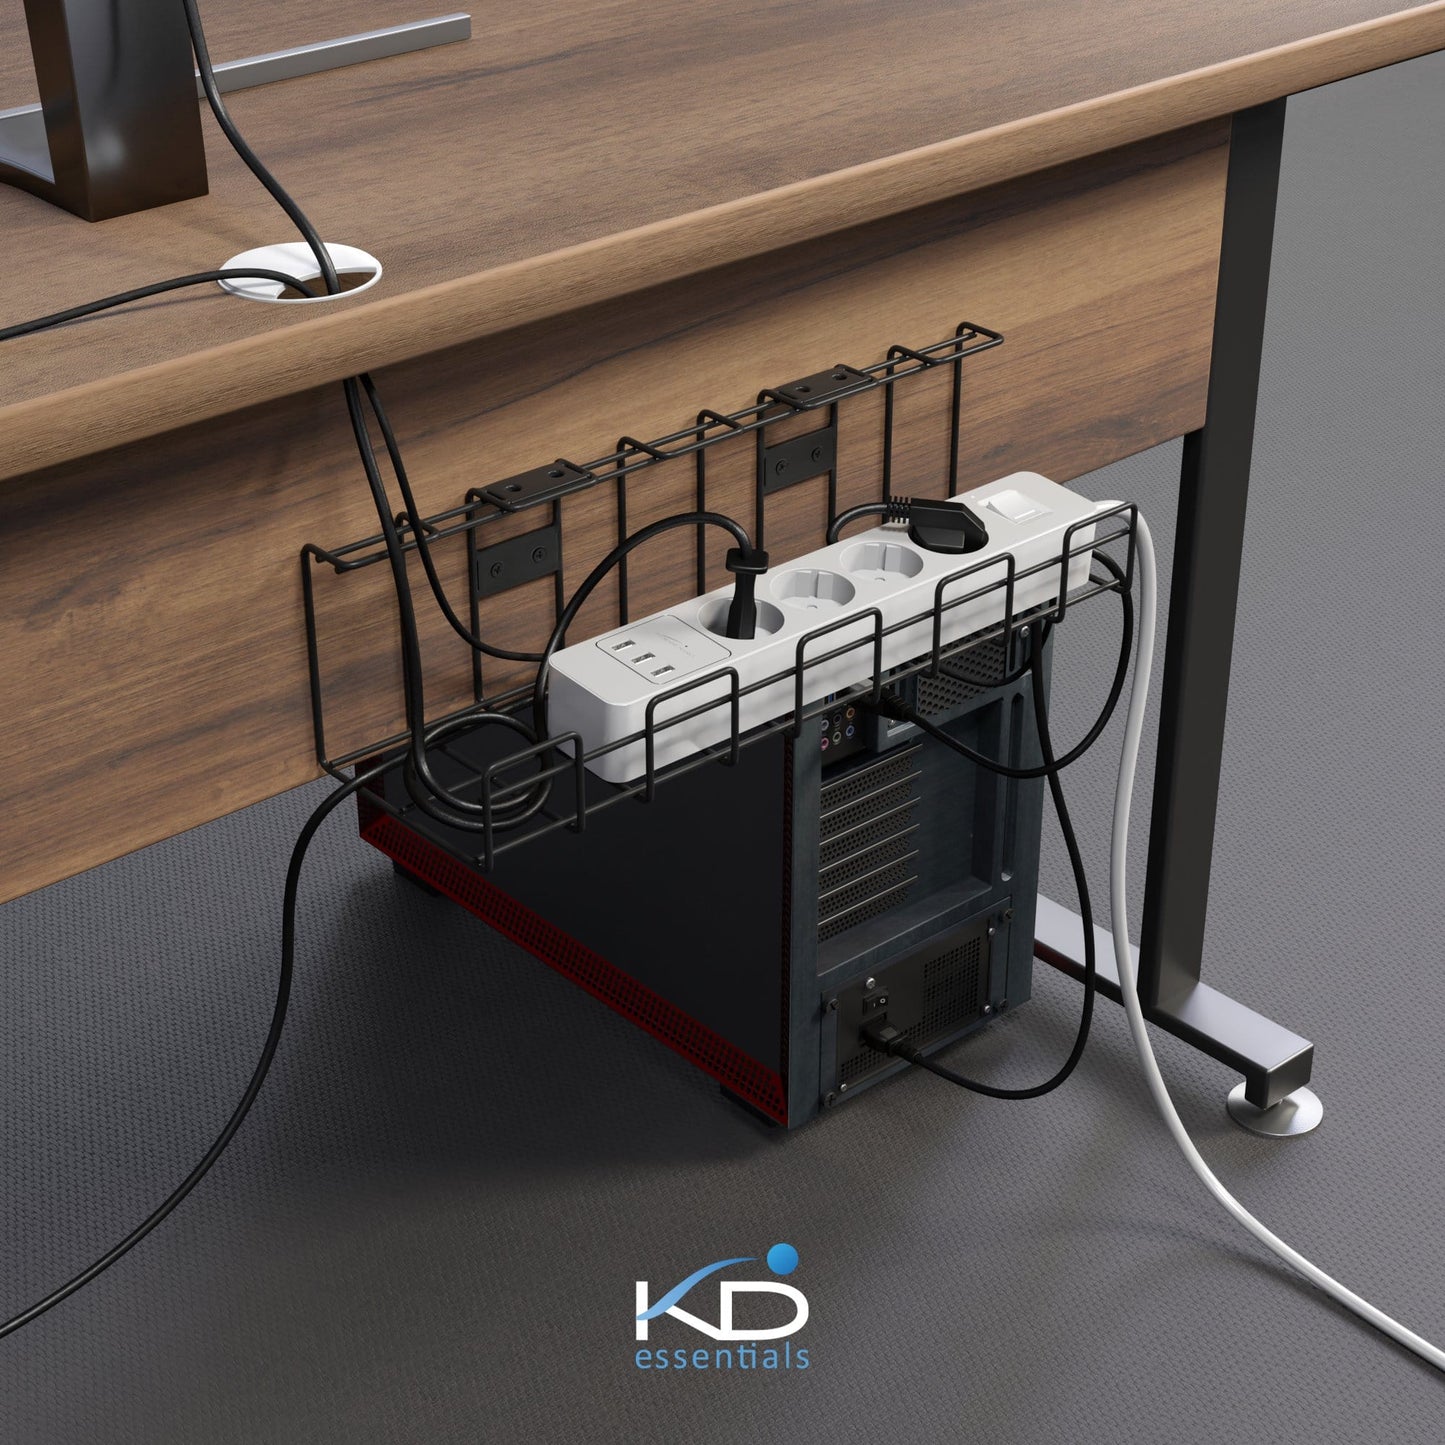 KD Essentials – Kabelkorb aus Metall, Größe M, schraubbar, 2er Set – Kabelhalterung & Kabelwanne